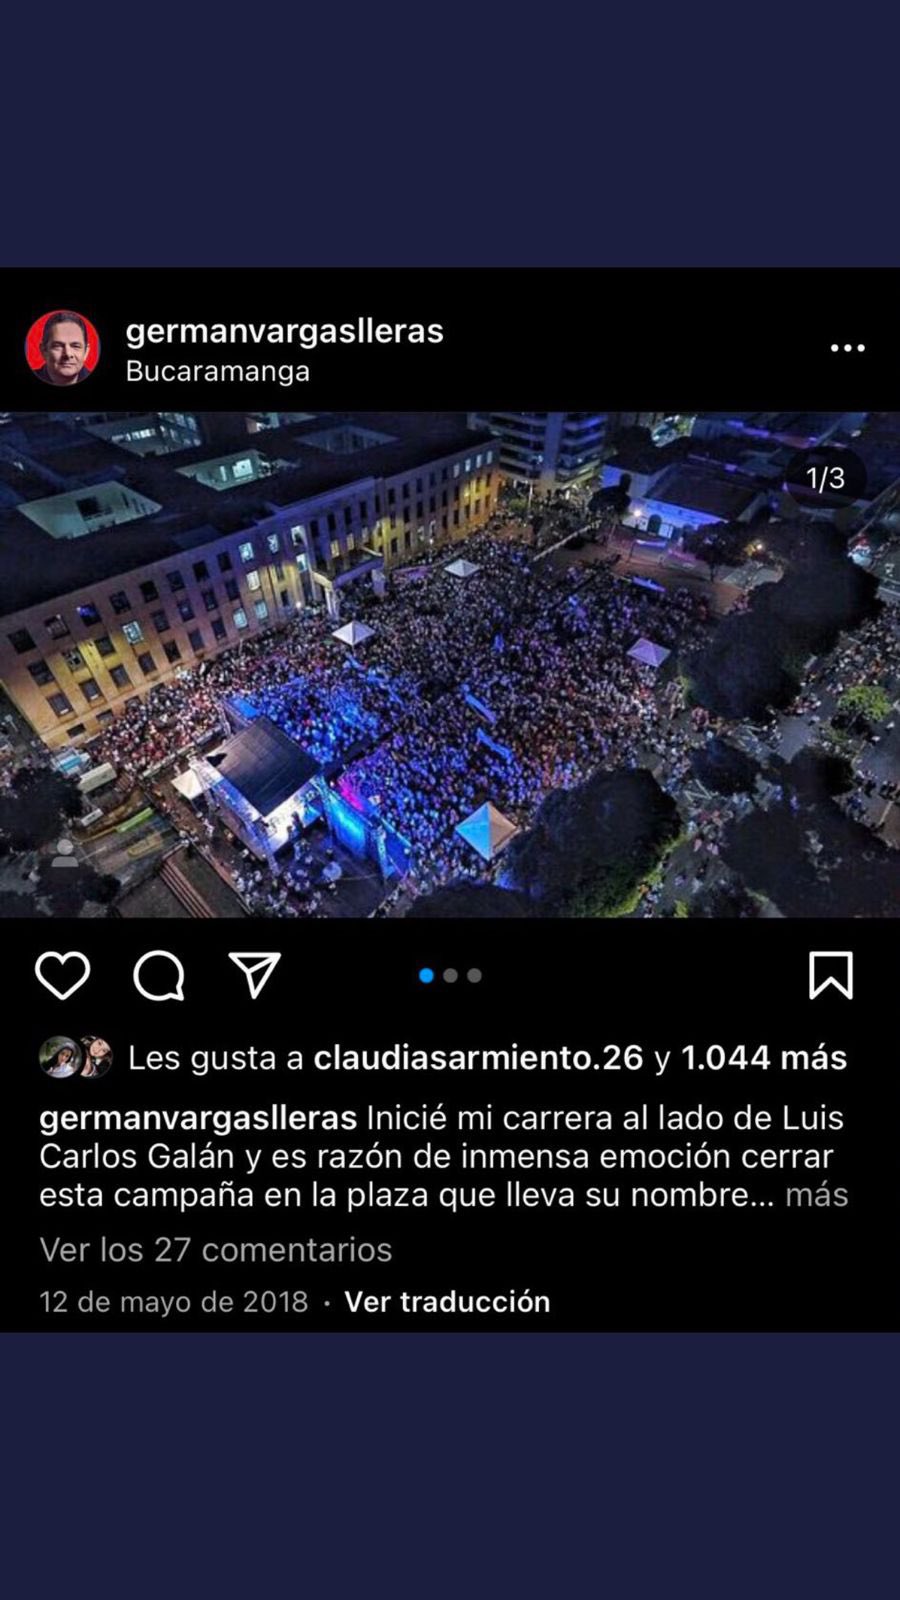 Fotografía original correspondiente a la campaña política de Germán Vargas Lleras en las elecciones presidenciales del 2018 / Captura de pantalla Instagram @germanvargaslleras